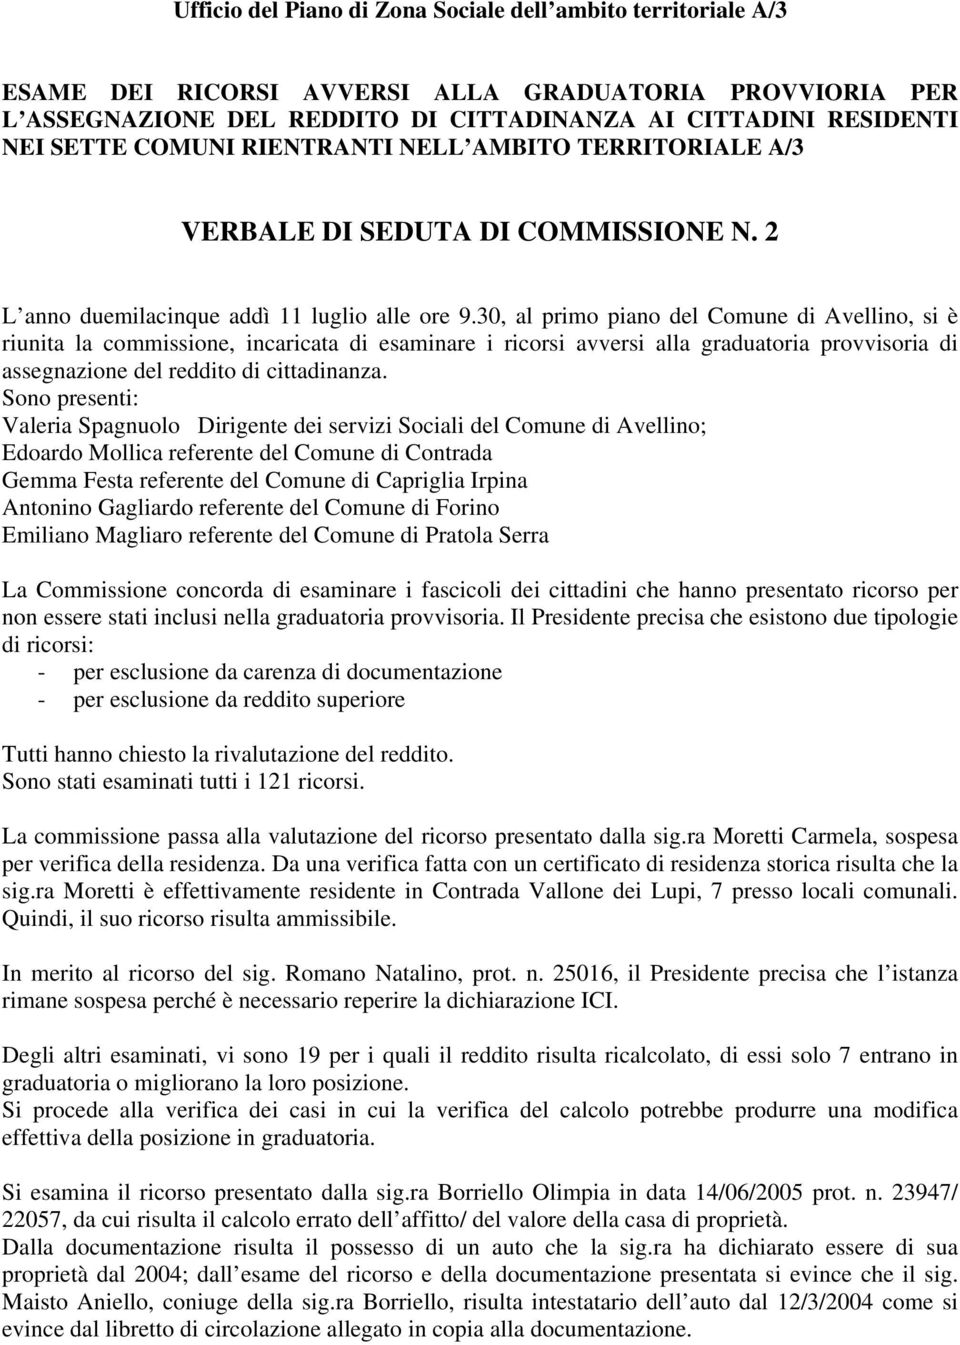 30, al primo piano del Comune di Avellino, si è riunita la commissione, incaricata di esaminare i ricorsi avversi alla graduatoria provvisoria di assegnazione del reddito di cittadinanza.